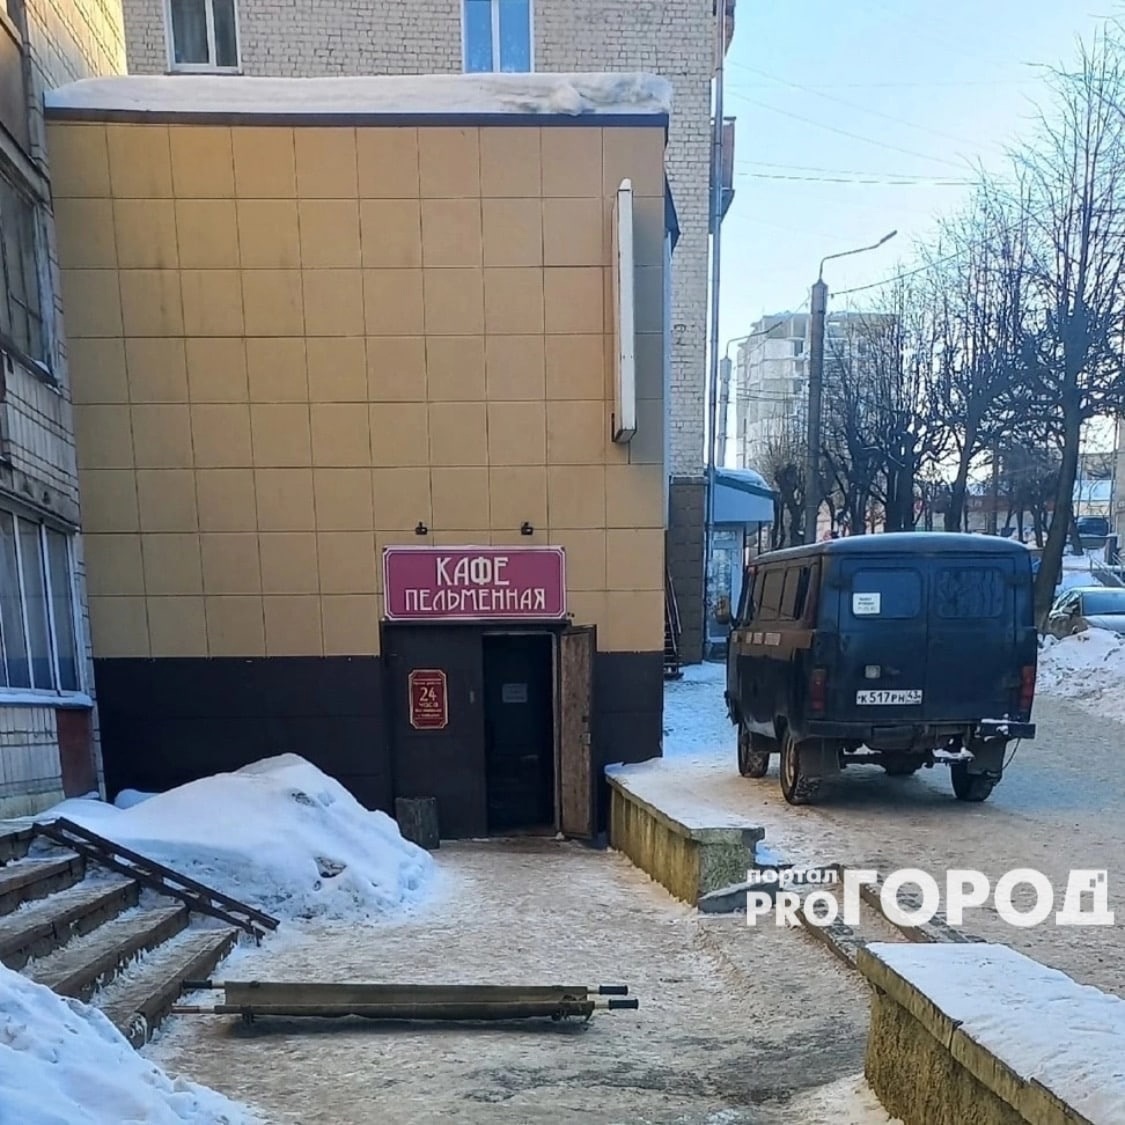  В Кирове на улице Ленина нашли тело 24-летней девушки